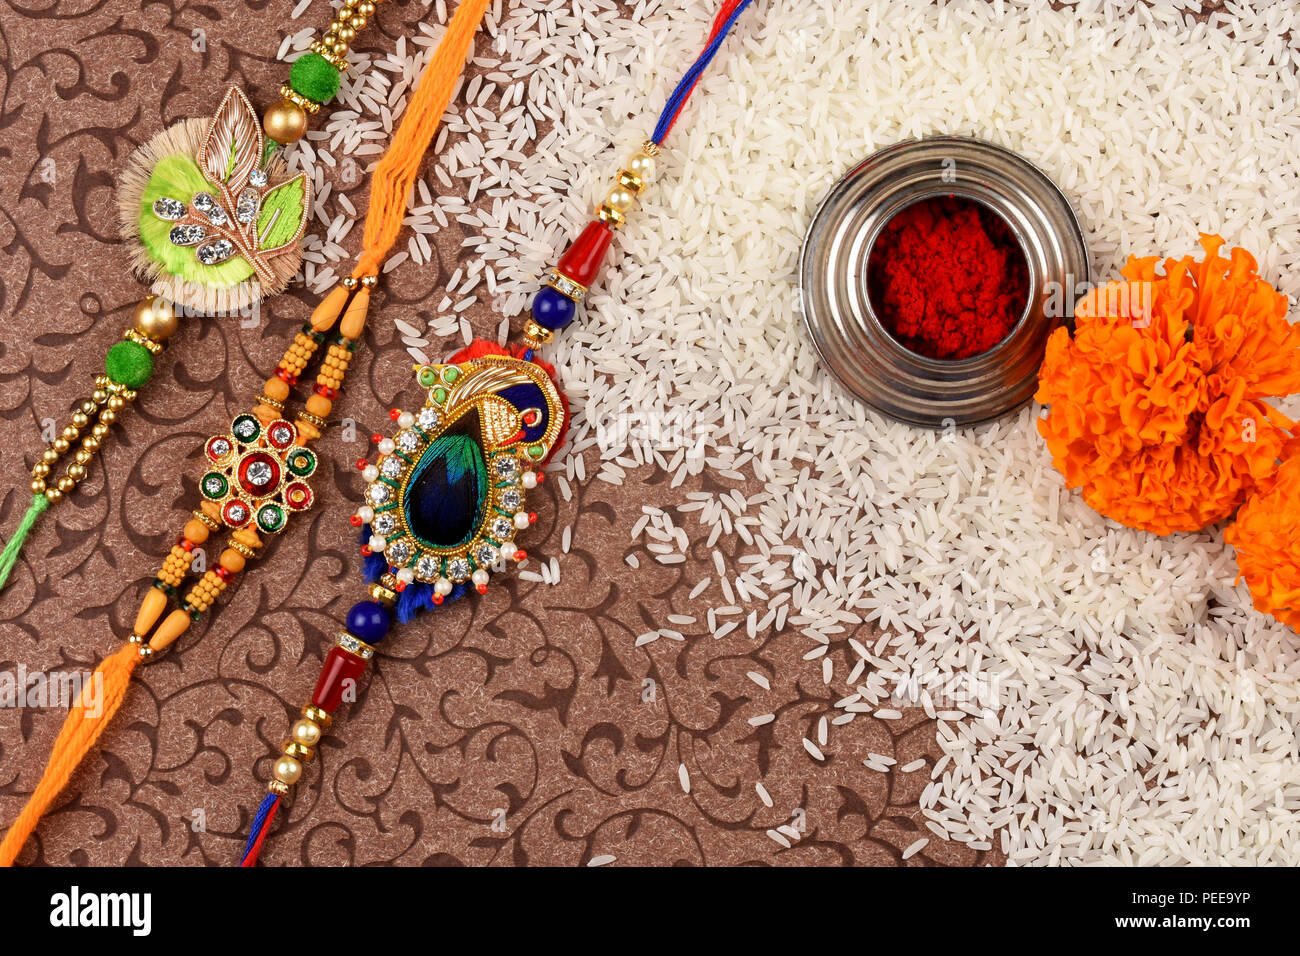 Indian Festival Raksha bandhan, rakhi with kumkum,rice and flowers Stock Photo